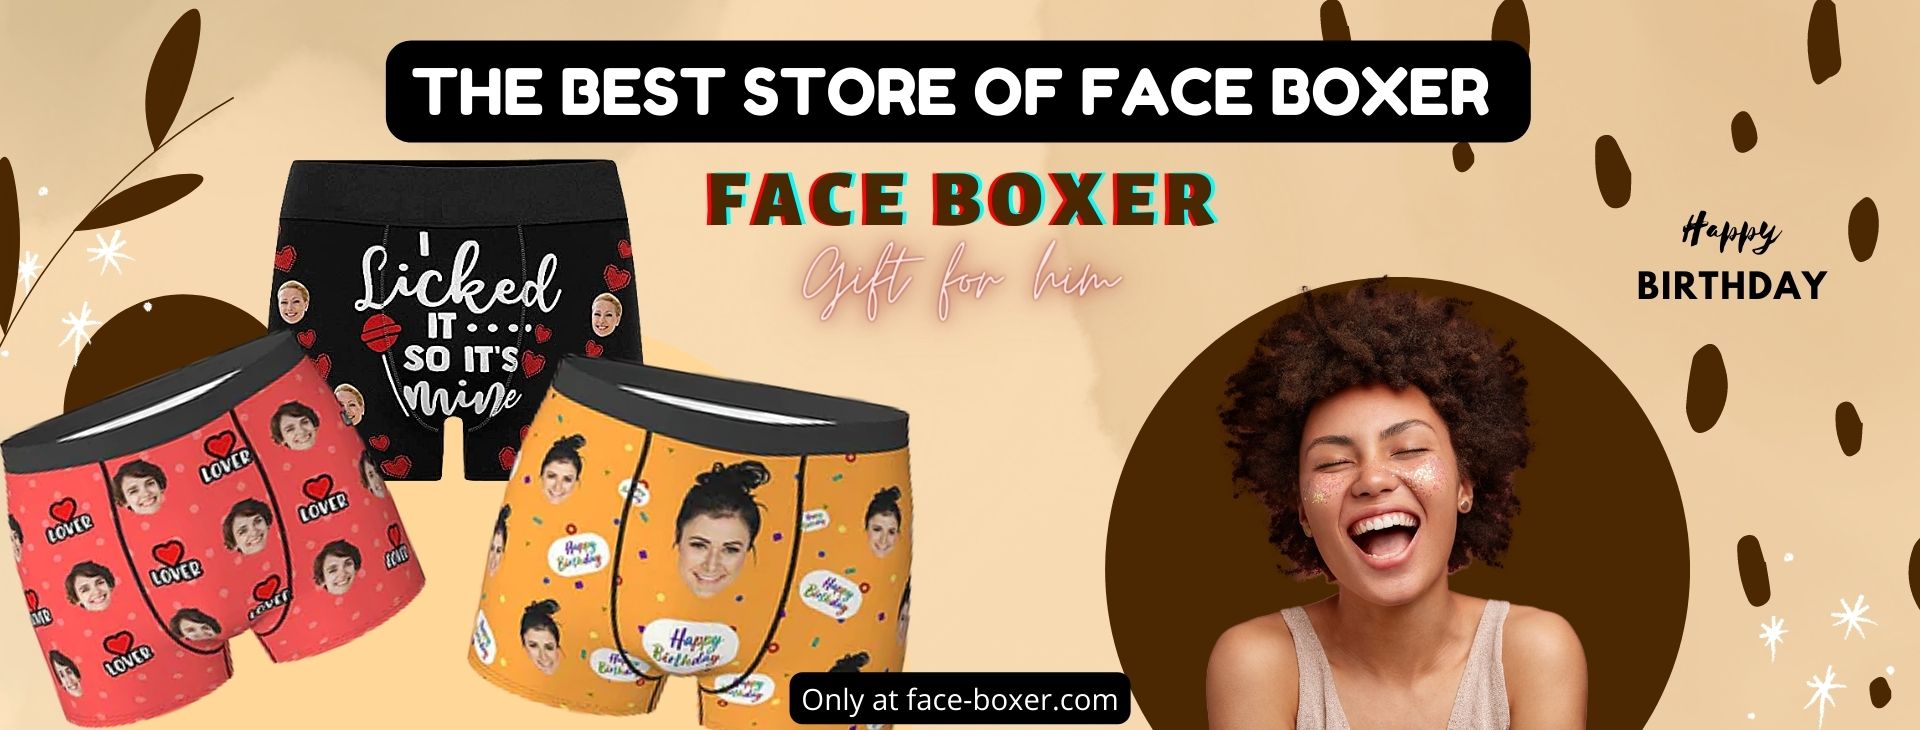 face boxer Banner - Face Boxer Store